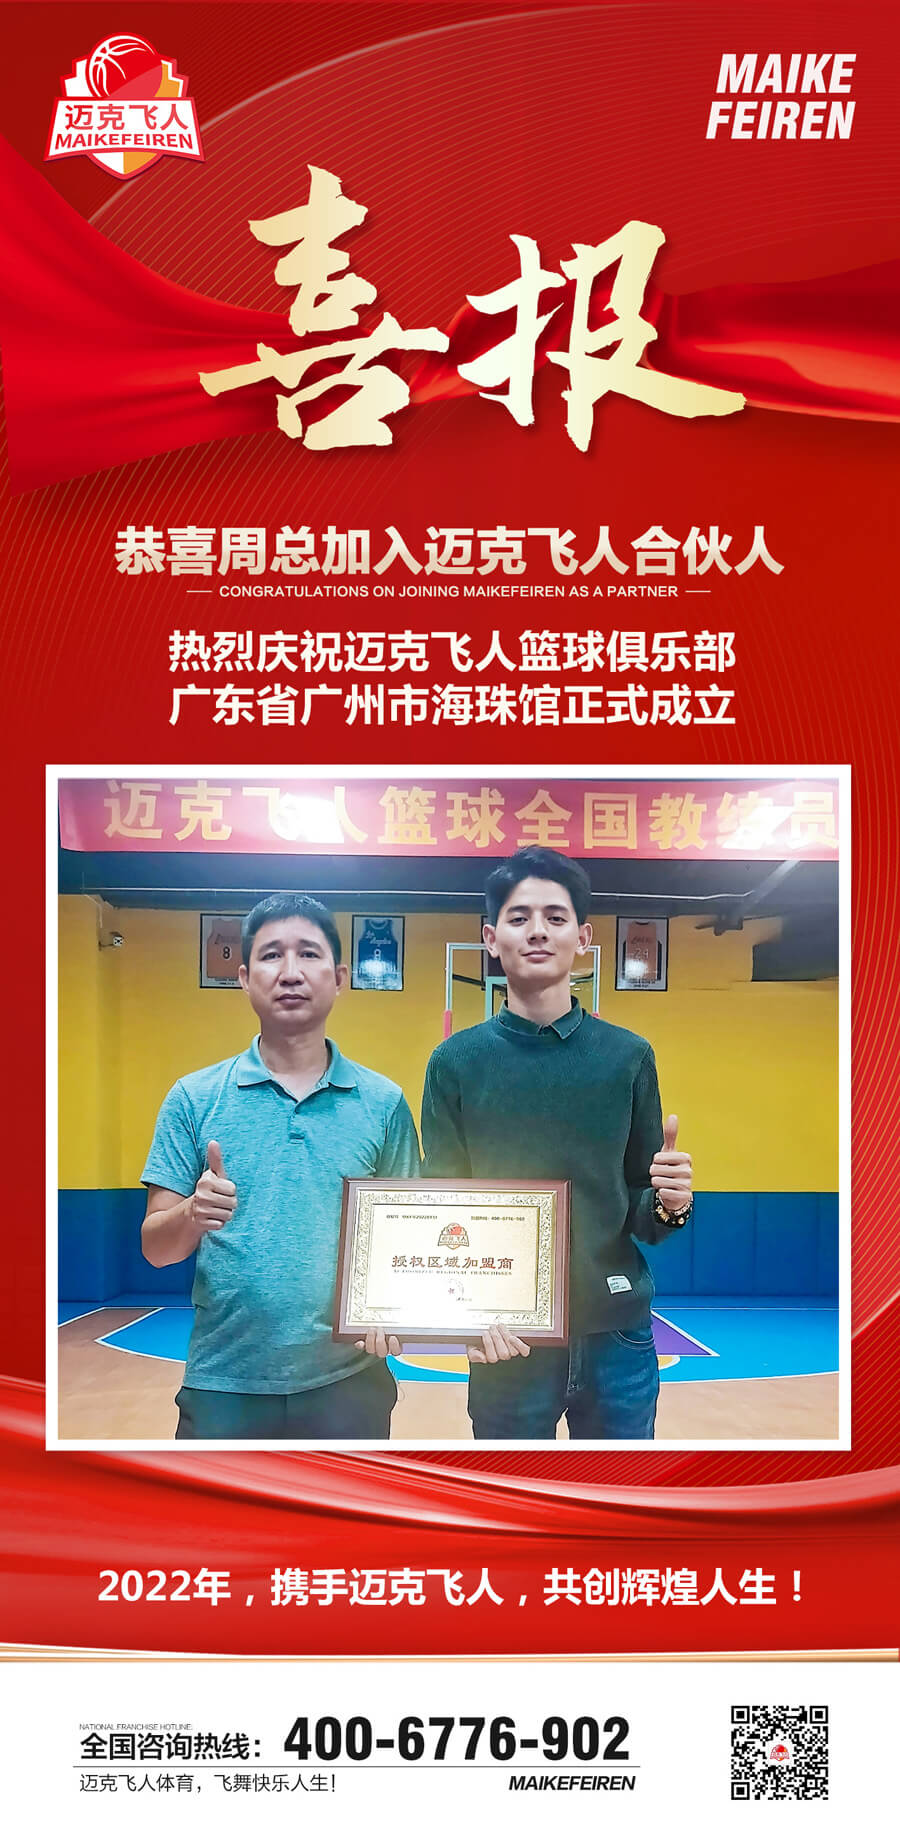 篮球加盟喜报：迈克飞人篮球俱乐部广州海珠区馆正式成立